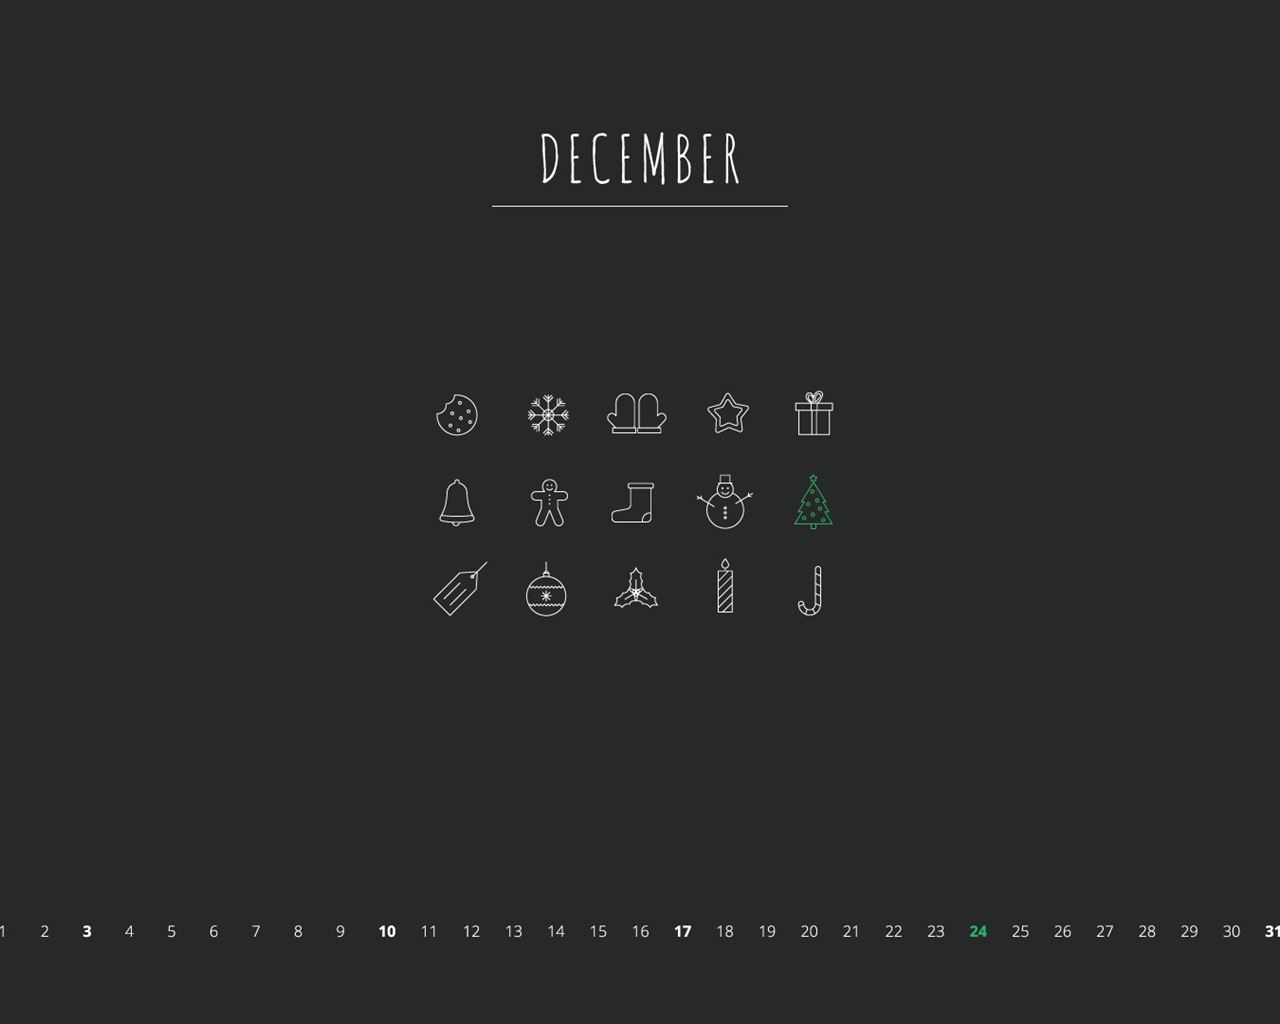 December 2017 Calendar Wallpaper #21 - 1280x1024